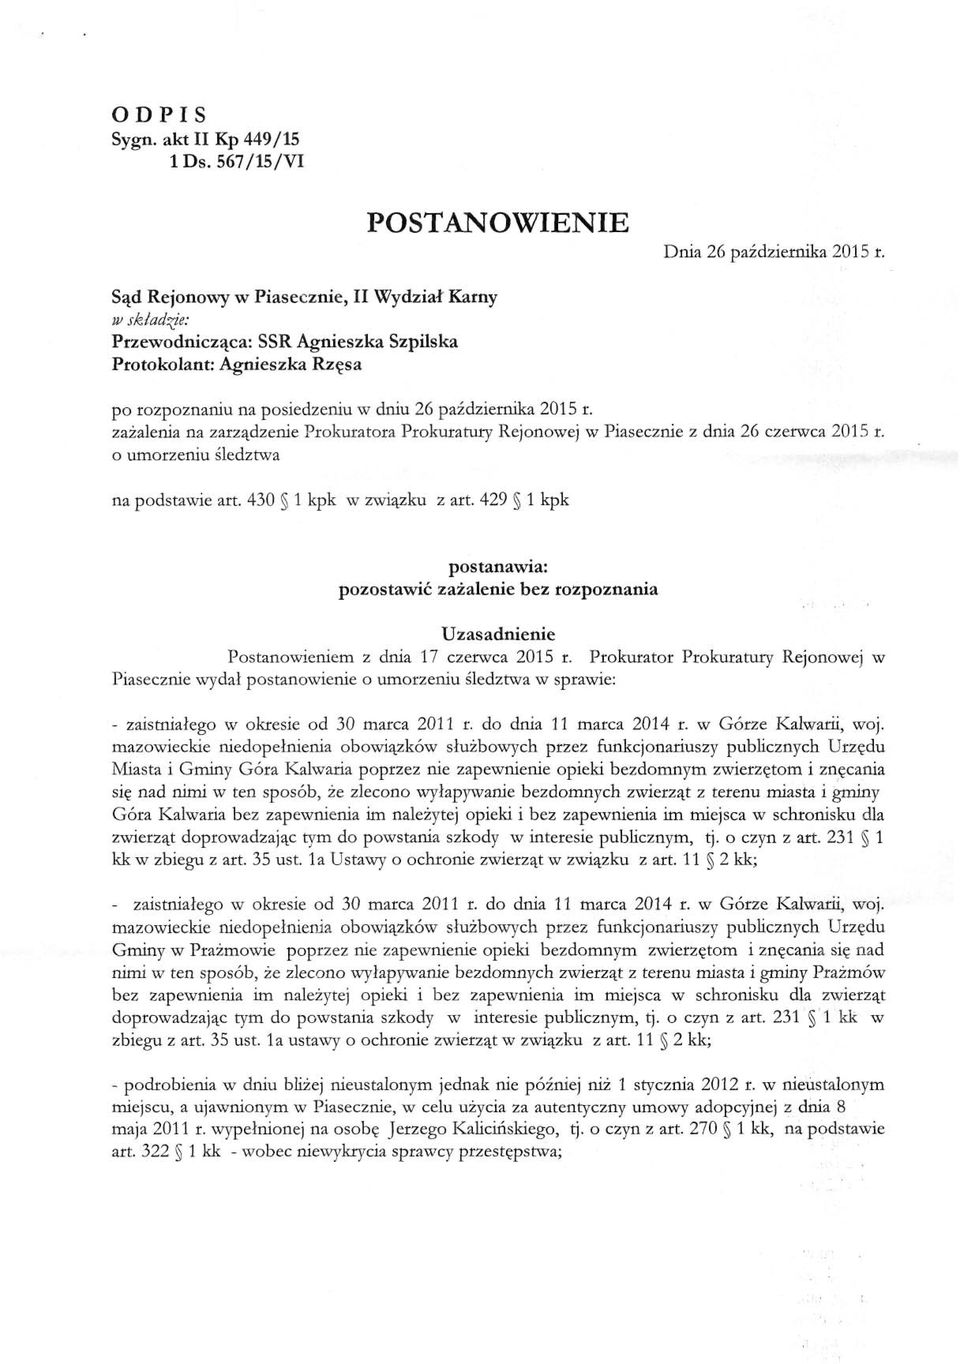 zażalenia na zarządzenie Prokuratora Prokuratury Rejonowej w Piasecznie z dnia 26 czerwca 2015 r. o umorzeniu śledztwa na podstawie art. 430 l kpk w związku z art.